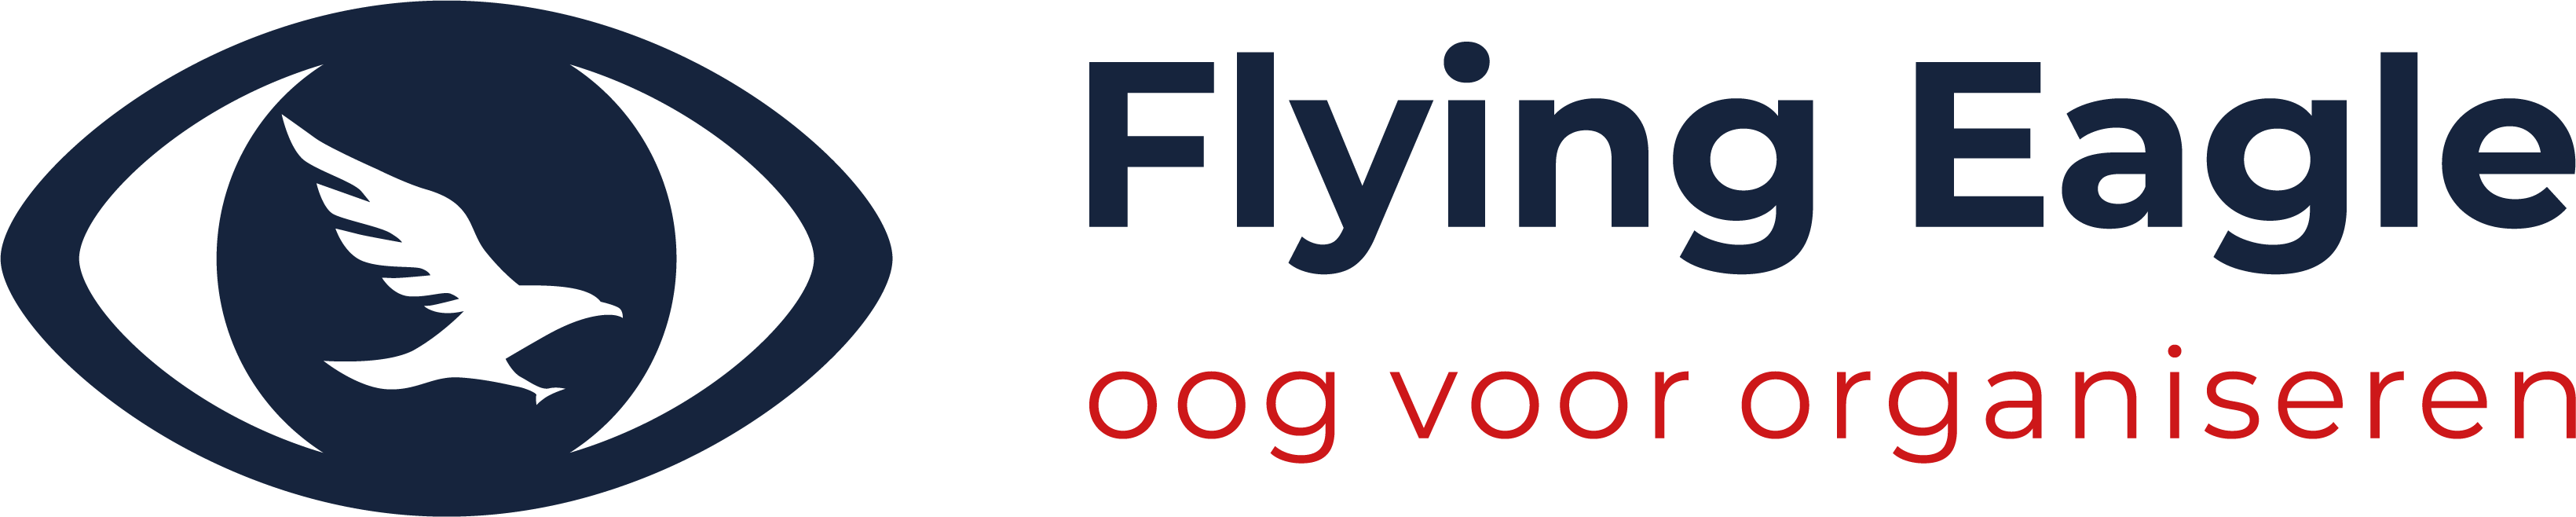 Flying Eagle organiseren logo kleur